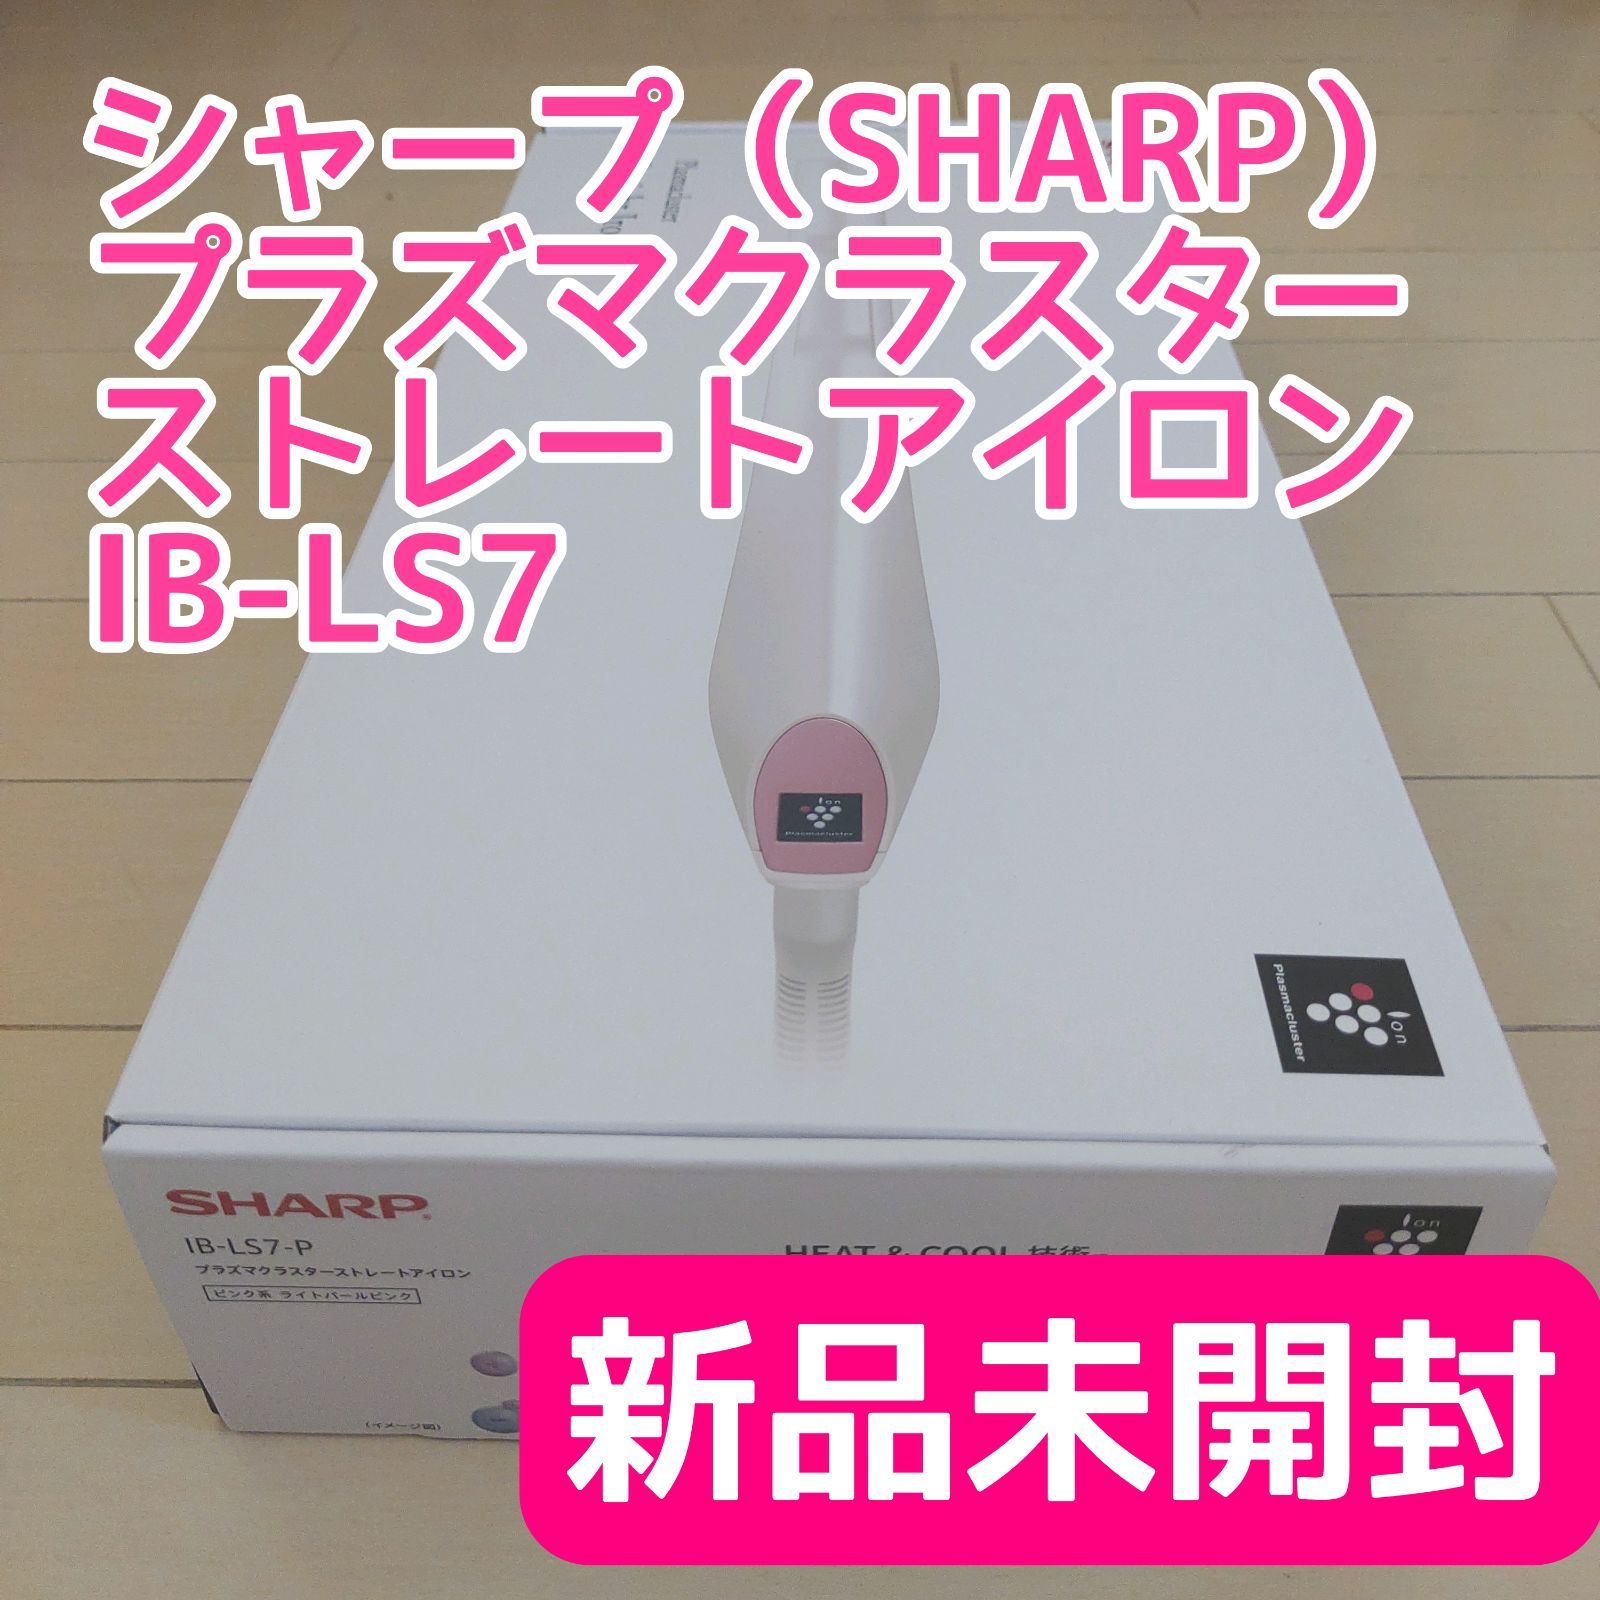 【新品未開封】シャープ IB-LS7-P プラズマクラスターストレートアイロン